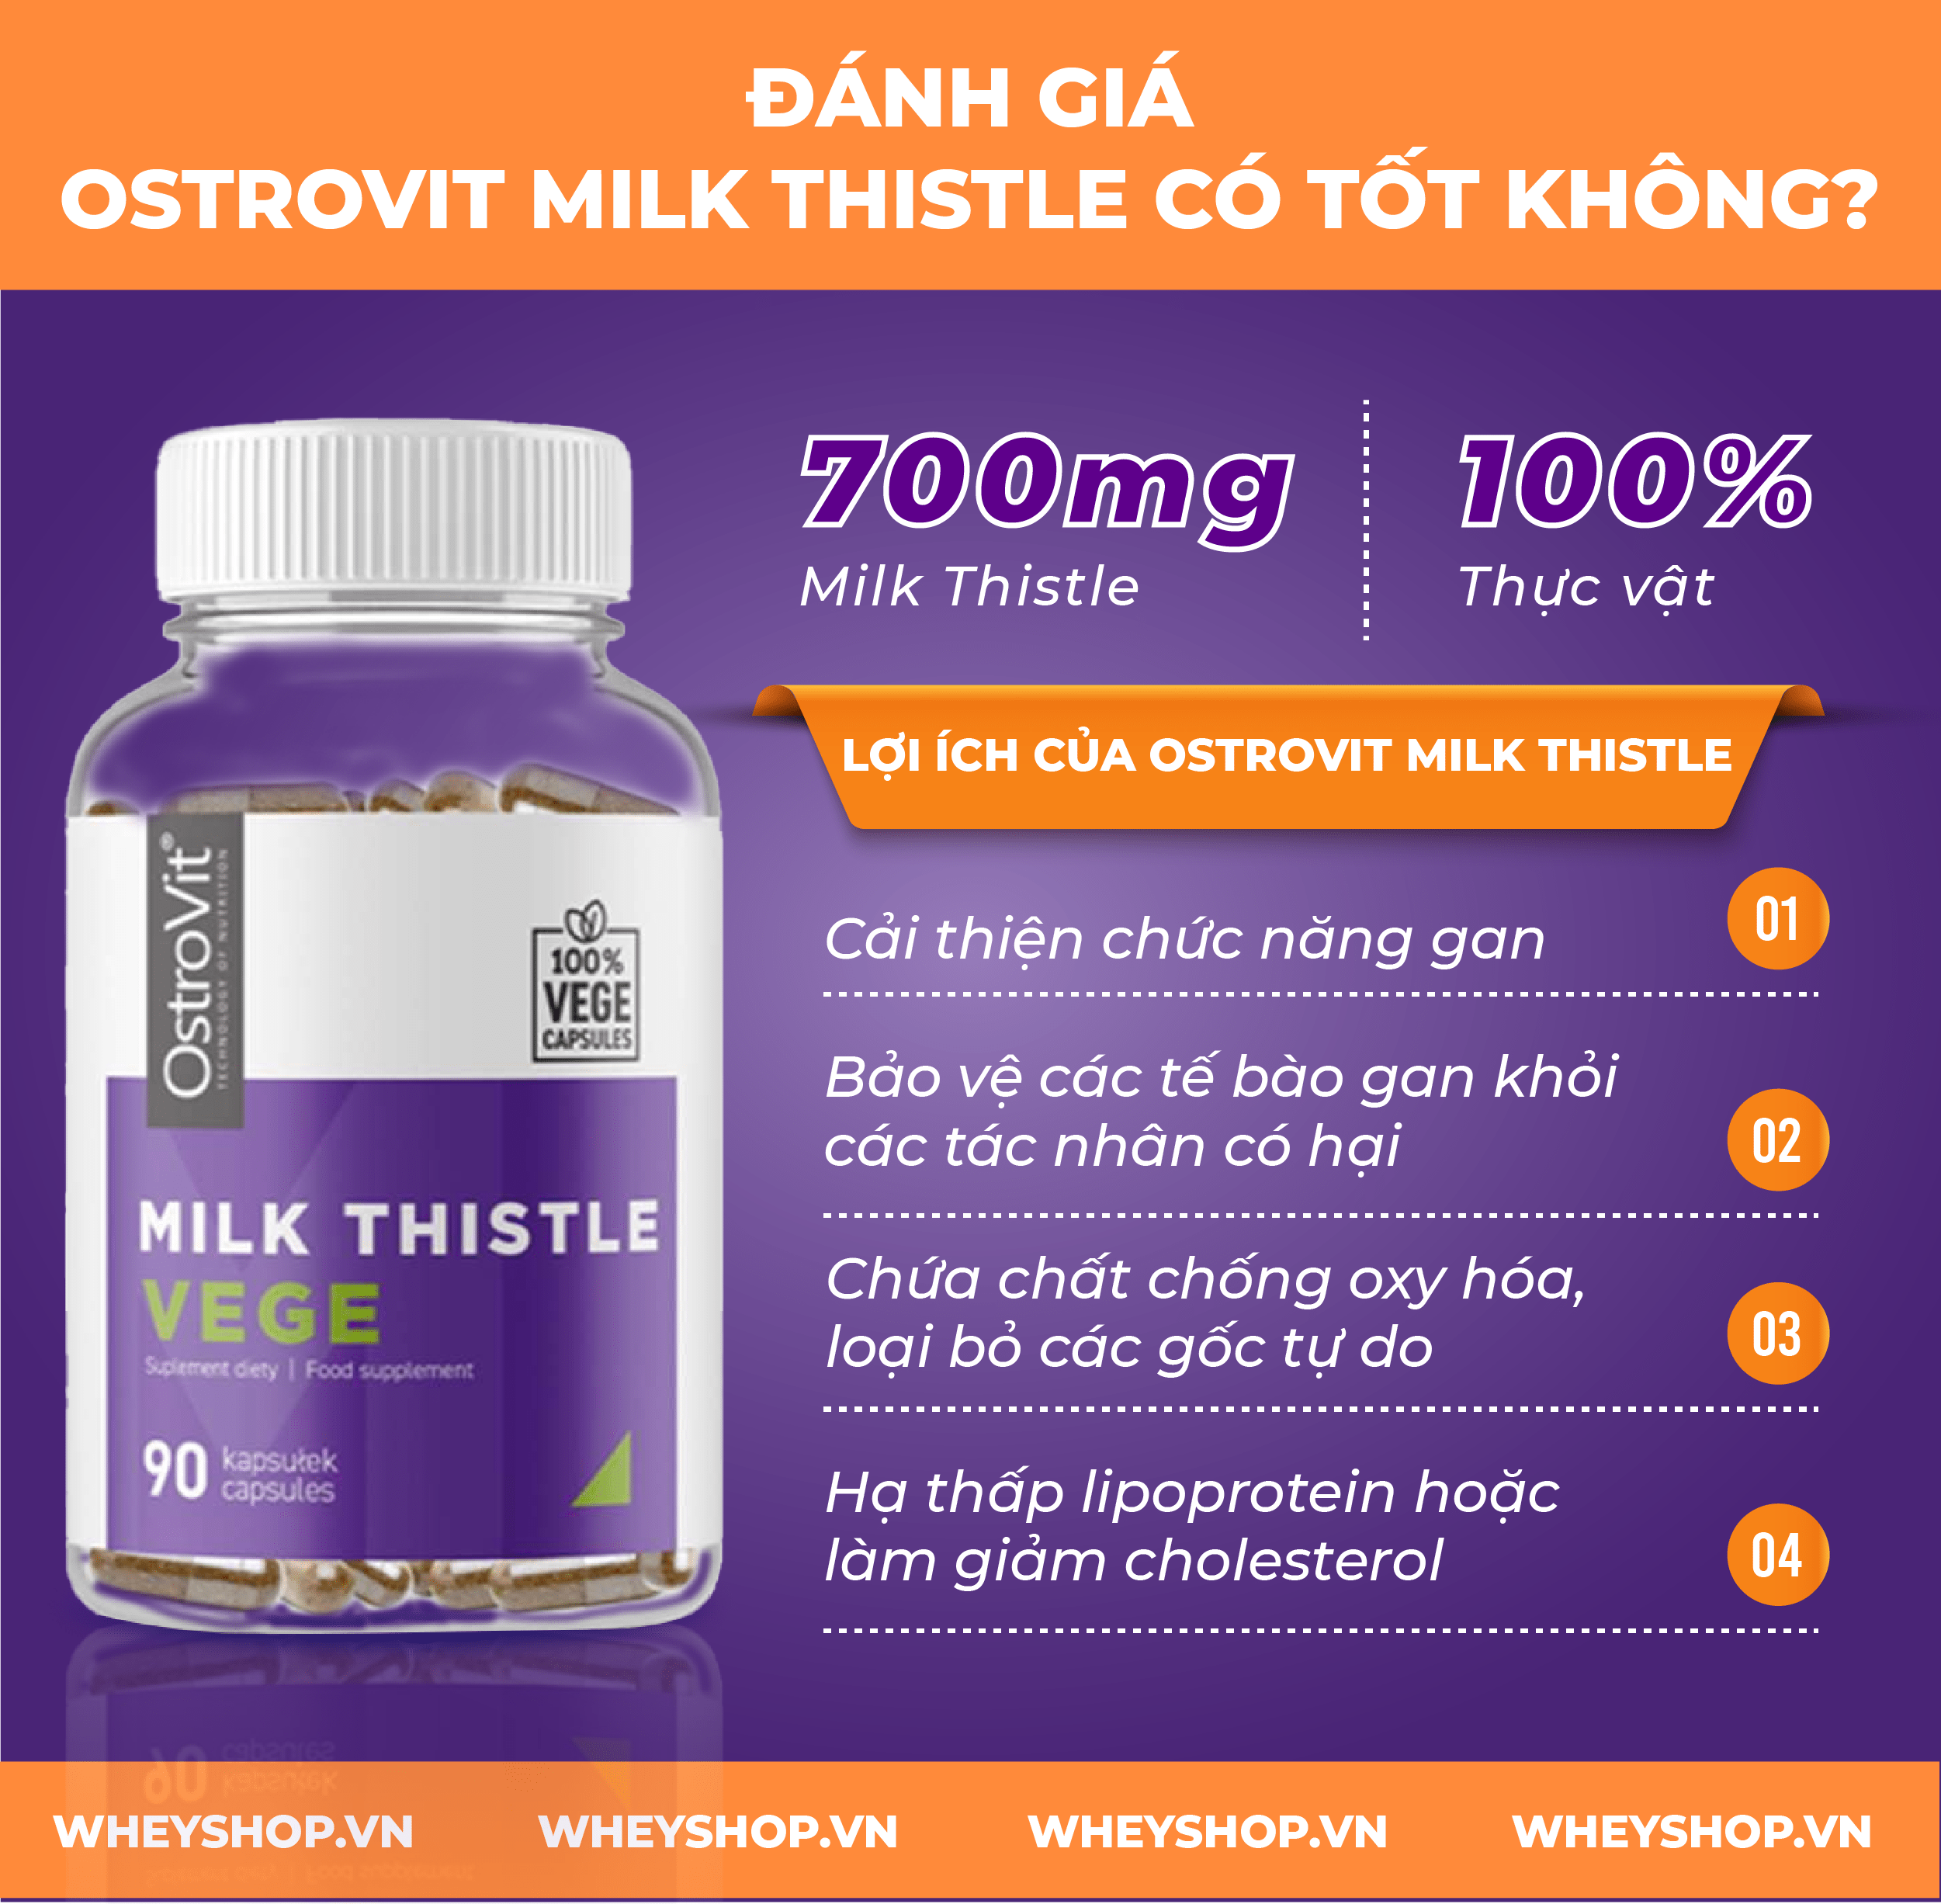 Nếu bạn đang phân vân về sản phẩm Ostrovit Milk Thistle thì hãy cùng WheyShop review đánh giá Ostrovit Milk Thistle có tốt không qua bài viết...